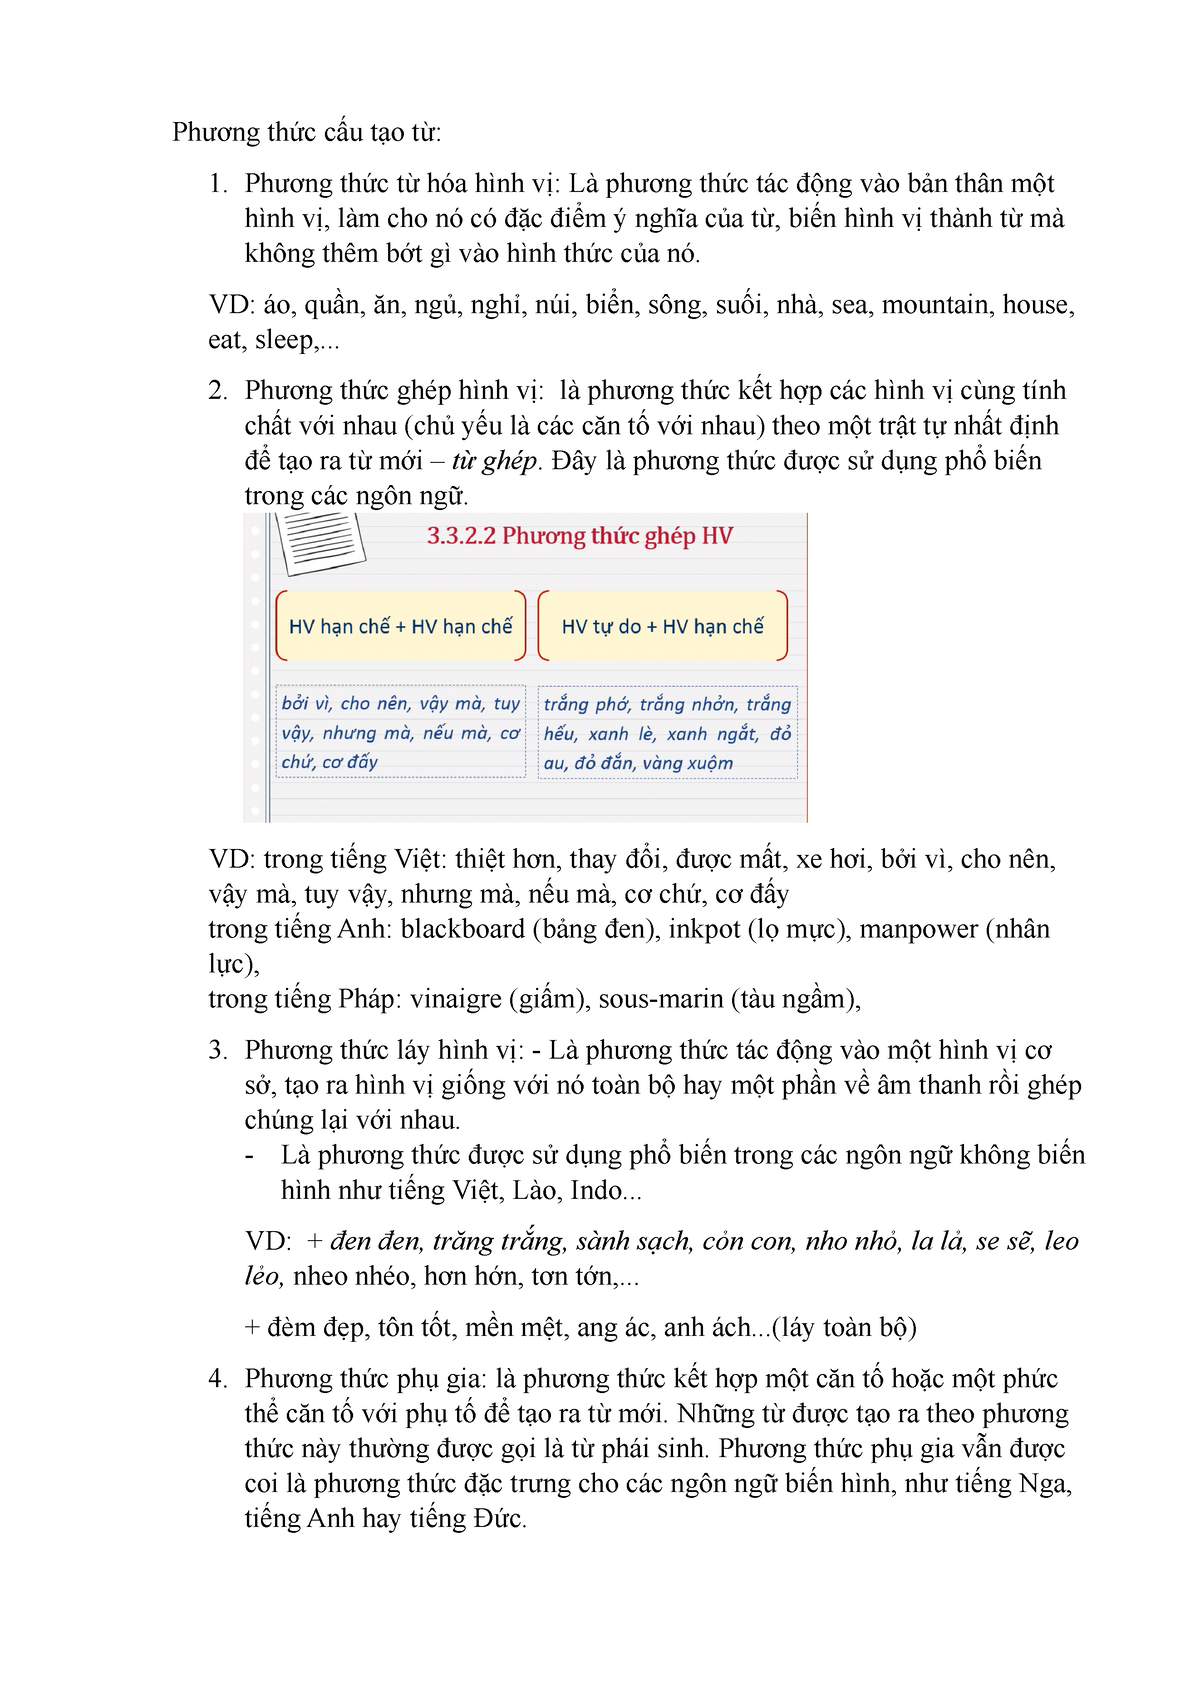 Tổng hợp các phương thức cấu tạo từ trong tiếng Việt đầy đủ và chi tiết